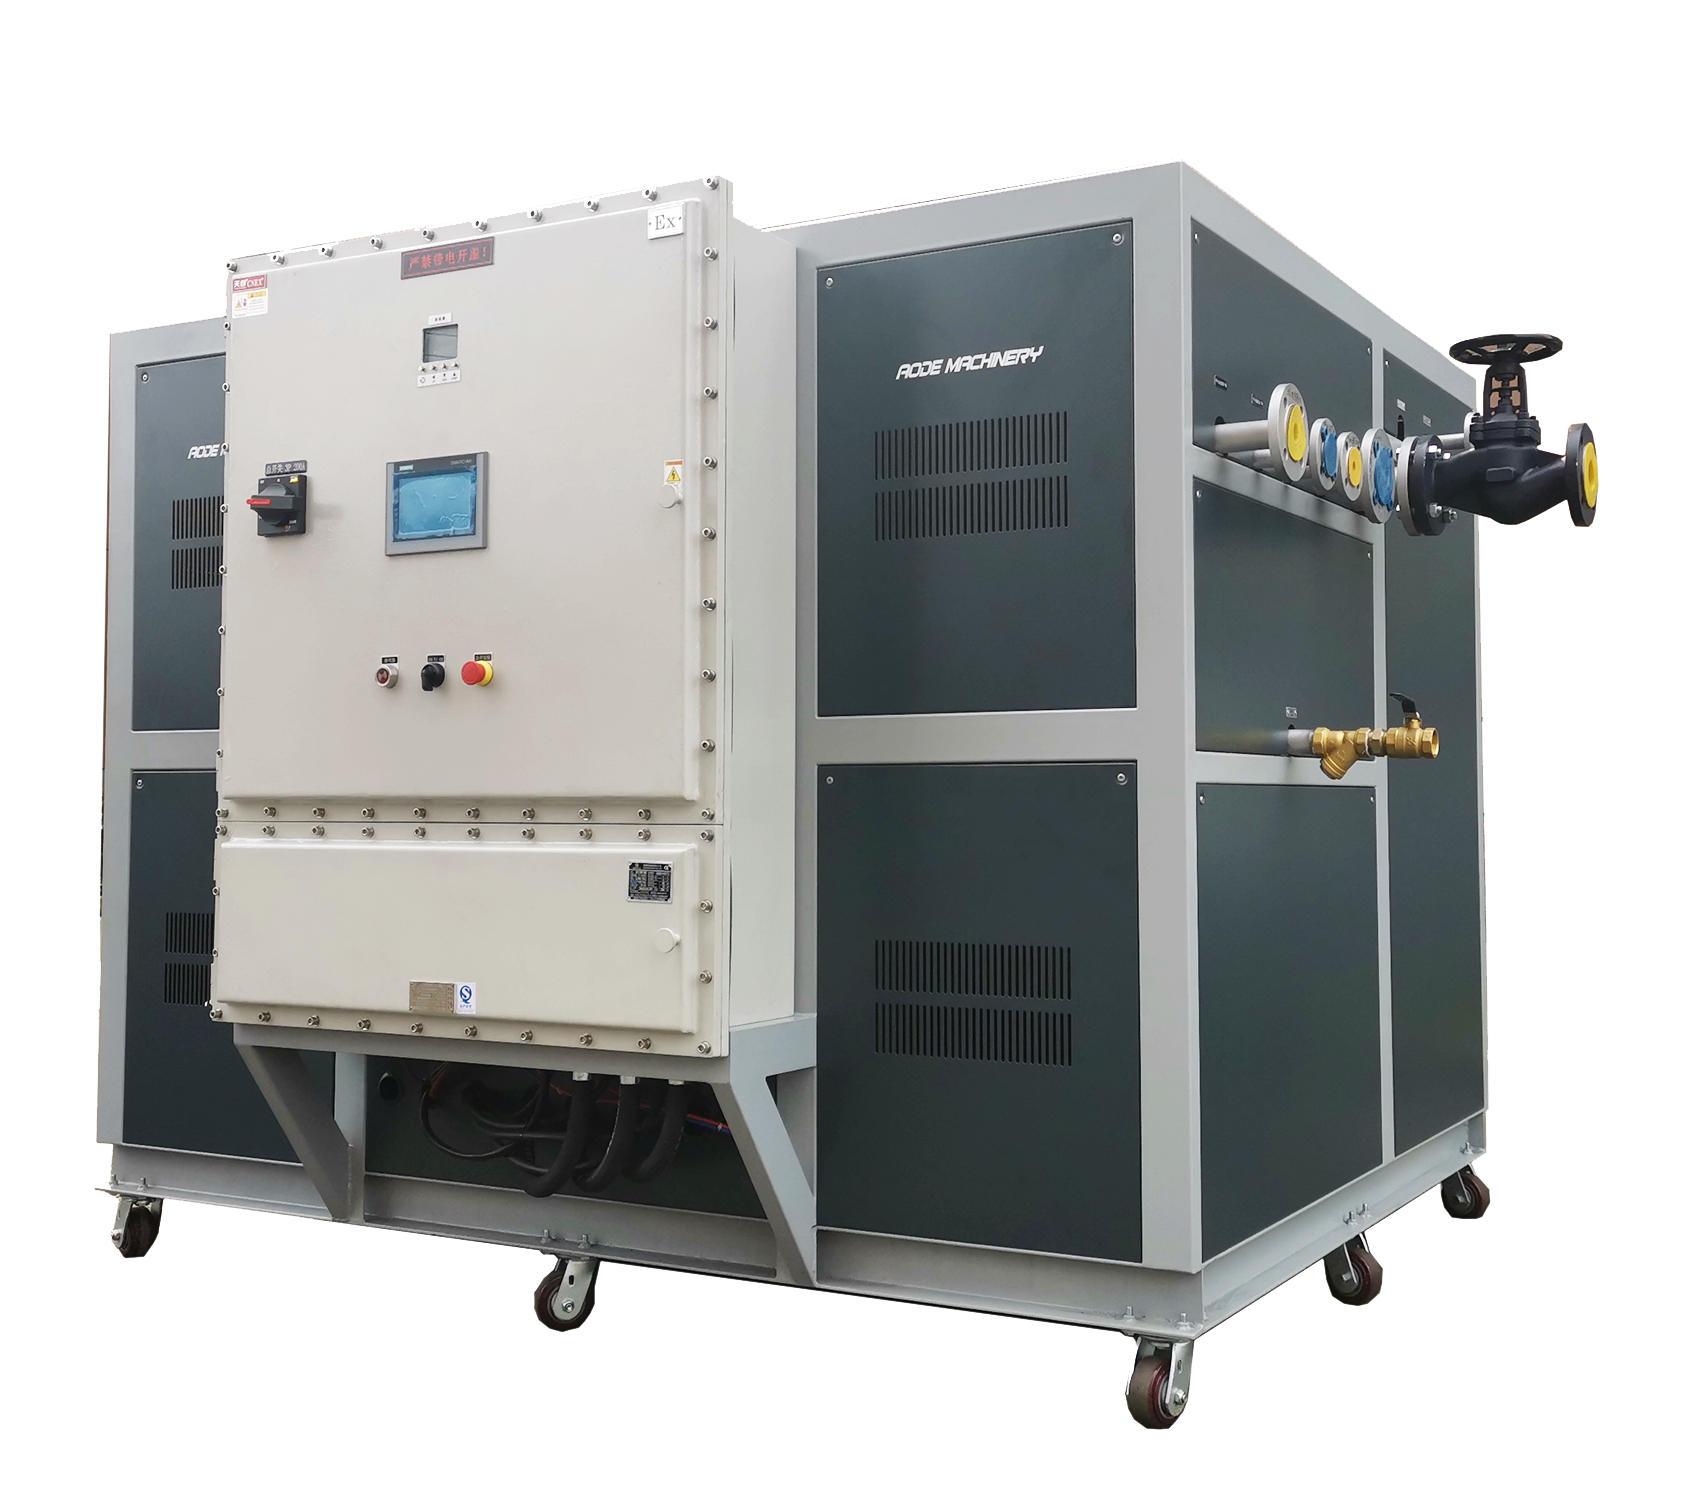 冷水机 天津奥德 有机热载体炉 型号齐全 导热油炉 量大从优专业定制化产品6